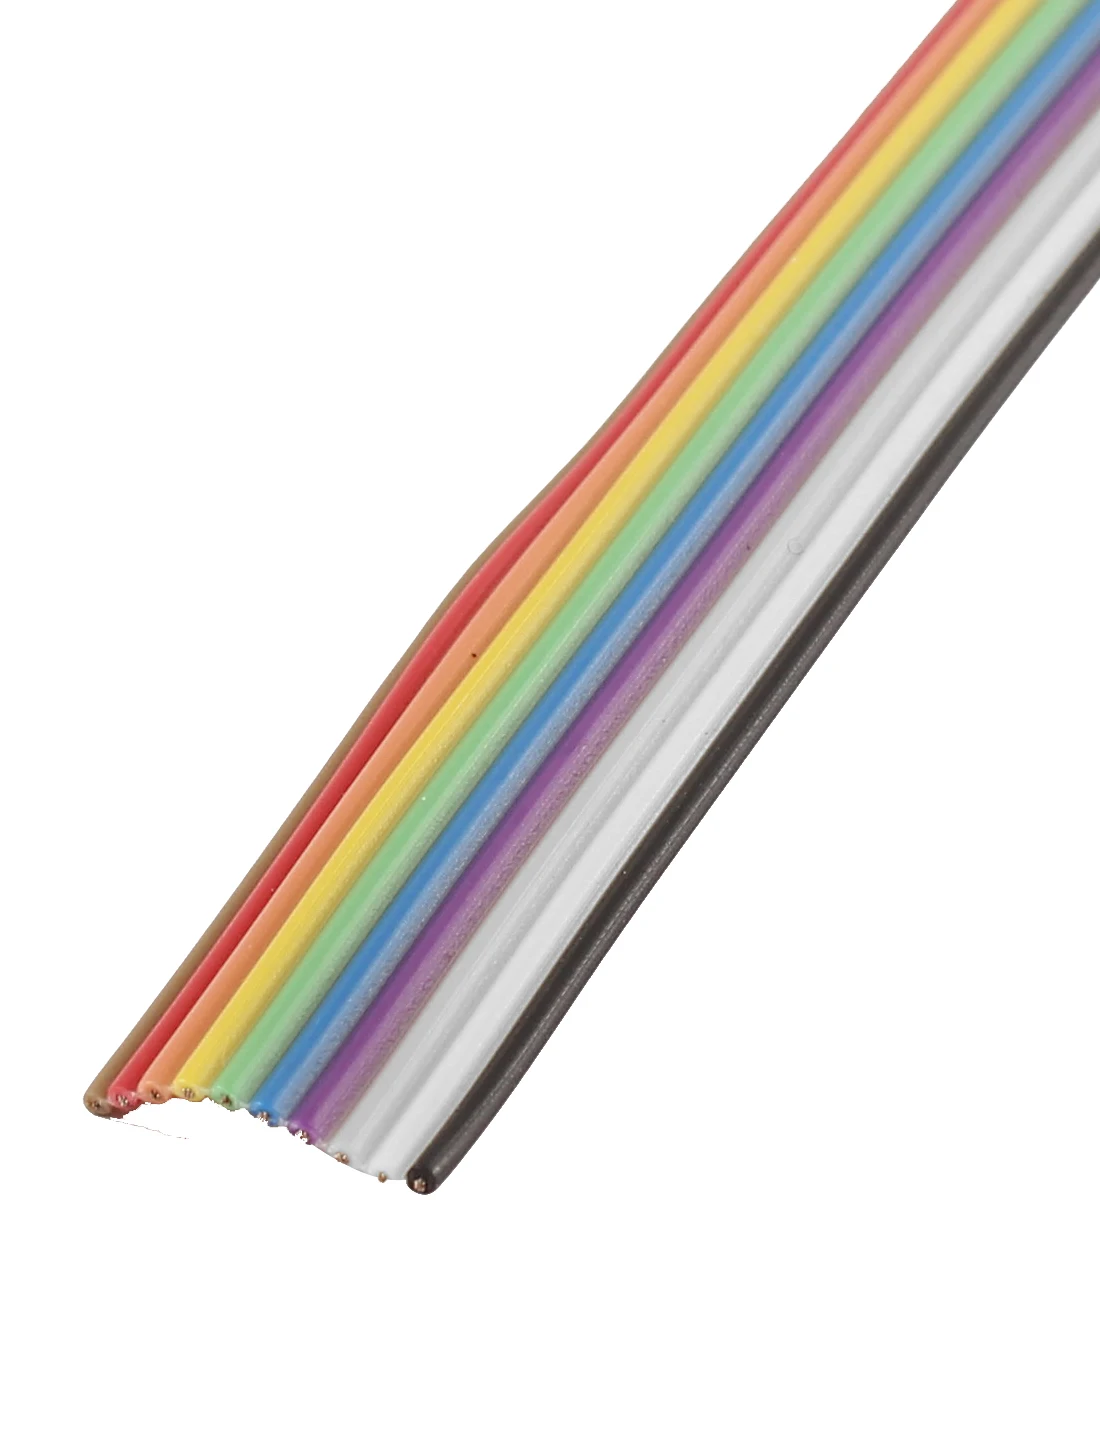 UXCELL 40 футов 12 м длина 10 путь 10 Pin цвета радуги плоский ленточный кабель Idc провод 1,27 мм расстояние Diy